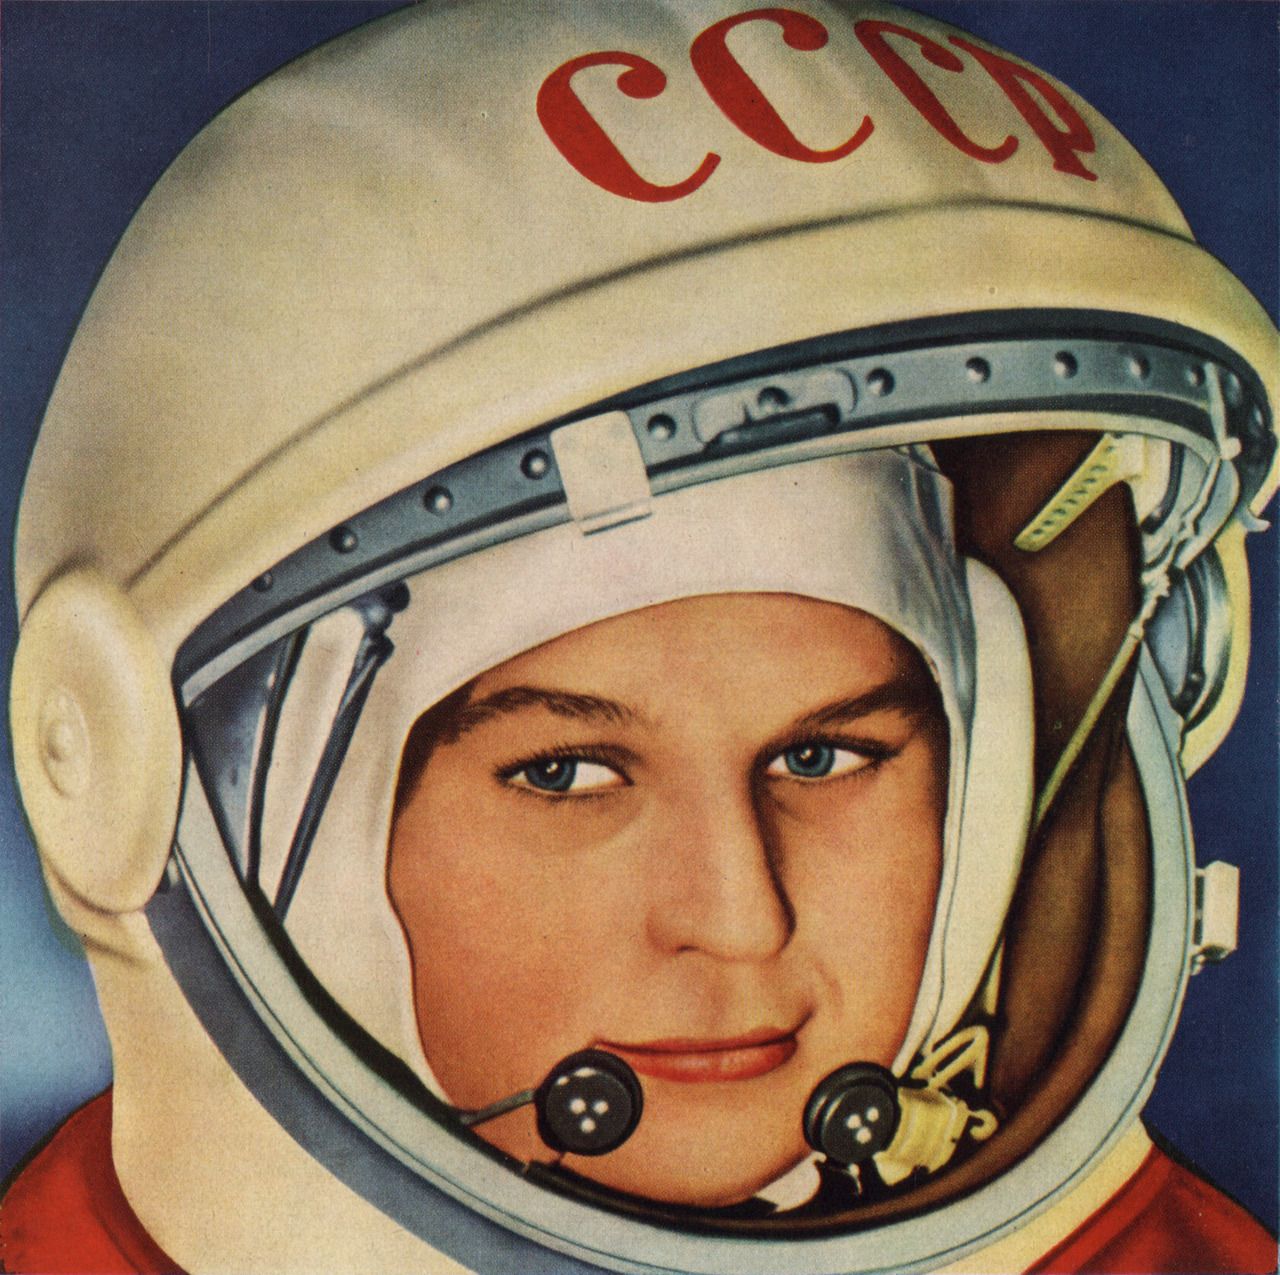 La mujer astronauta más famosa de la historia es V. Vladímirovna Tereshkova y ahora la conquista de Marte la realizarán mujeres astronautas.